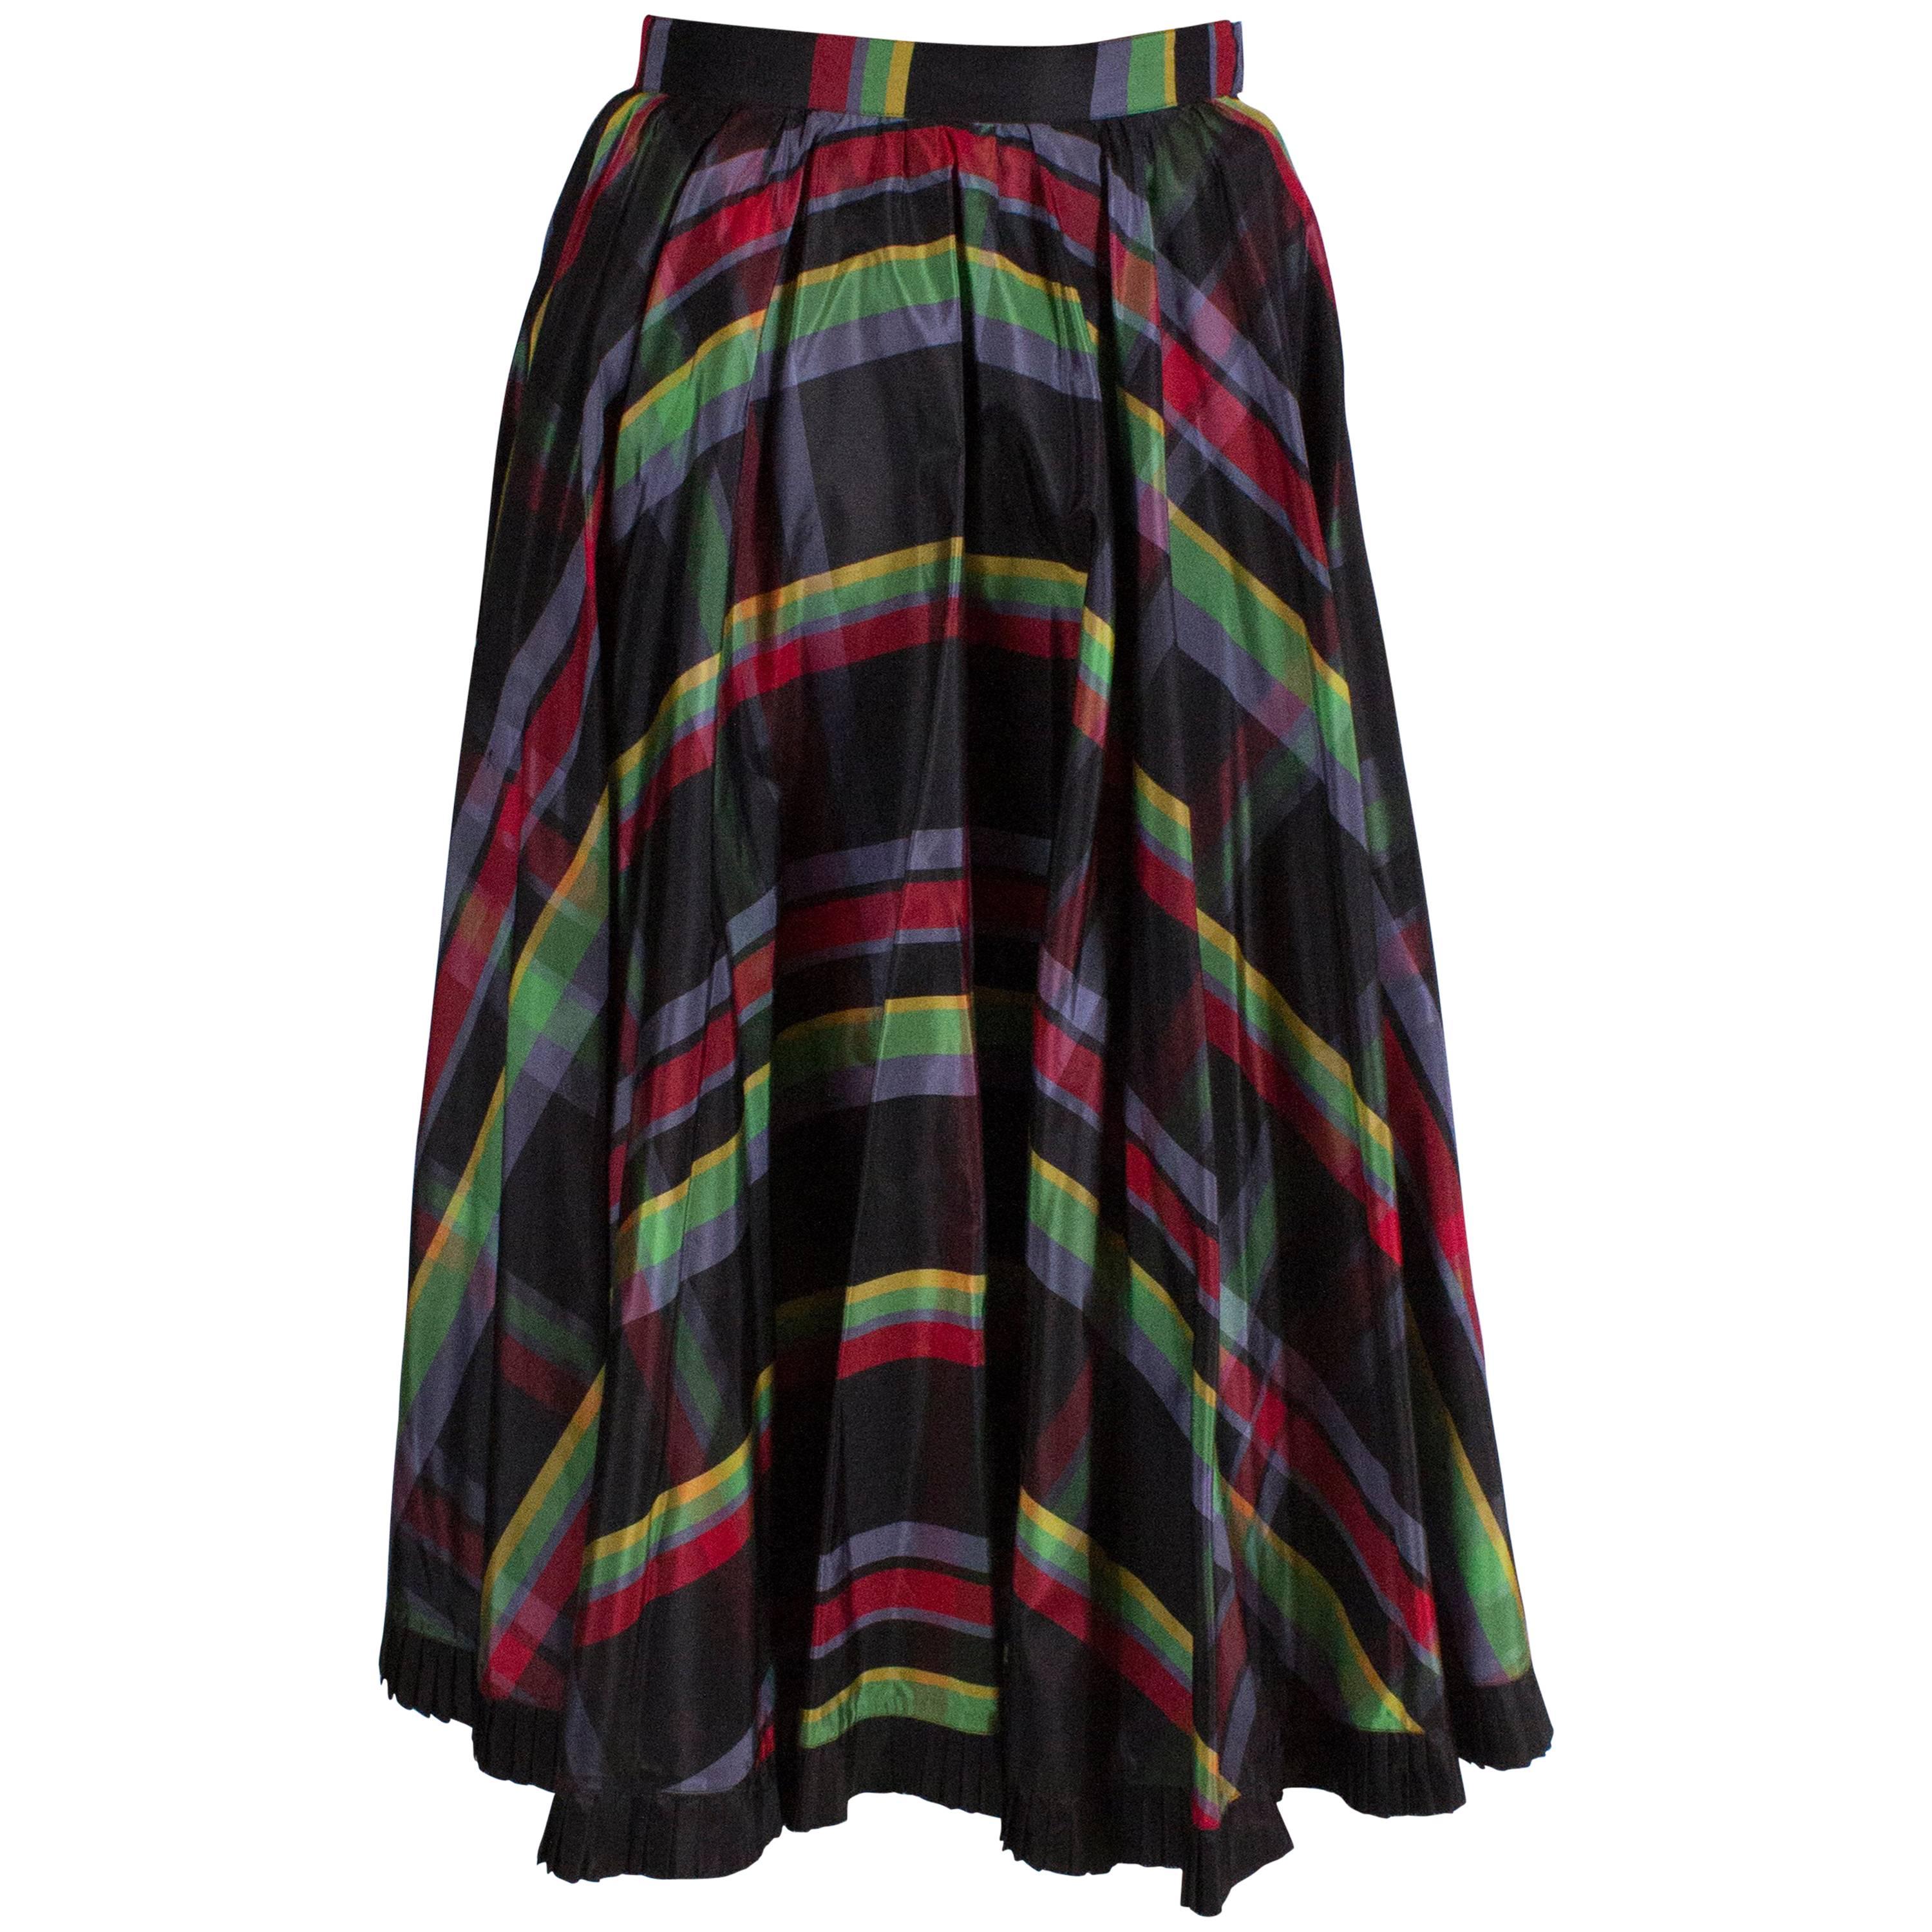 Italian Silk Skirt with Black Frilled Underskirt